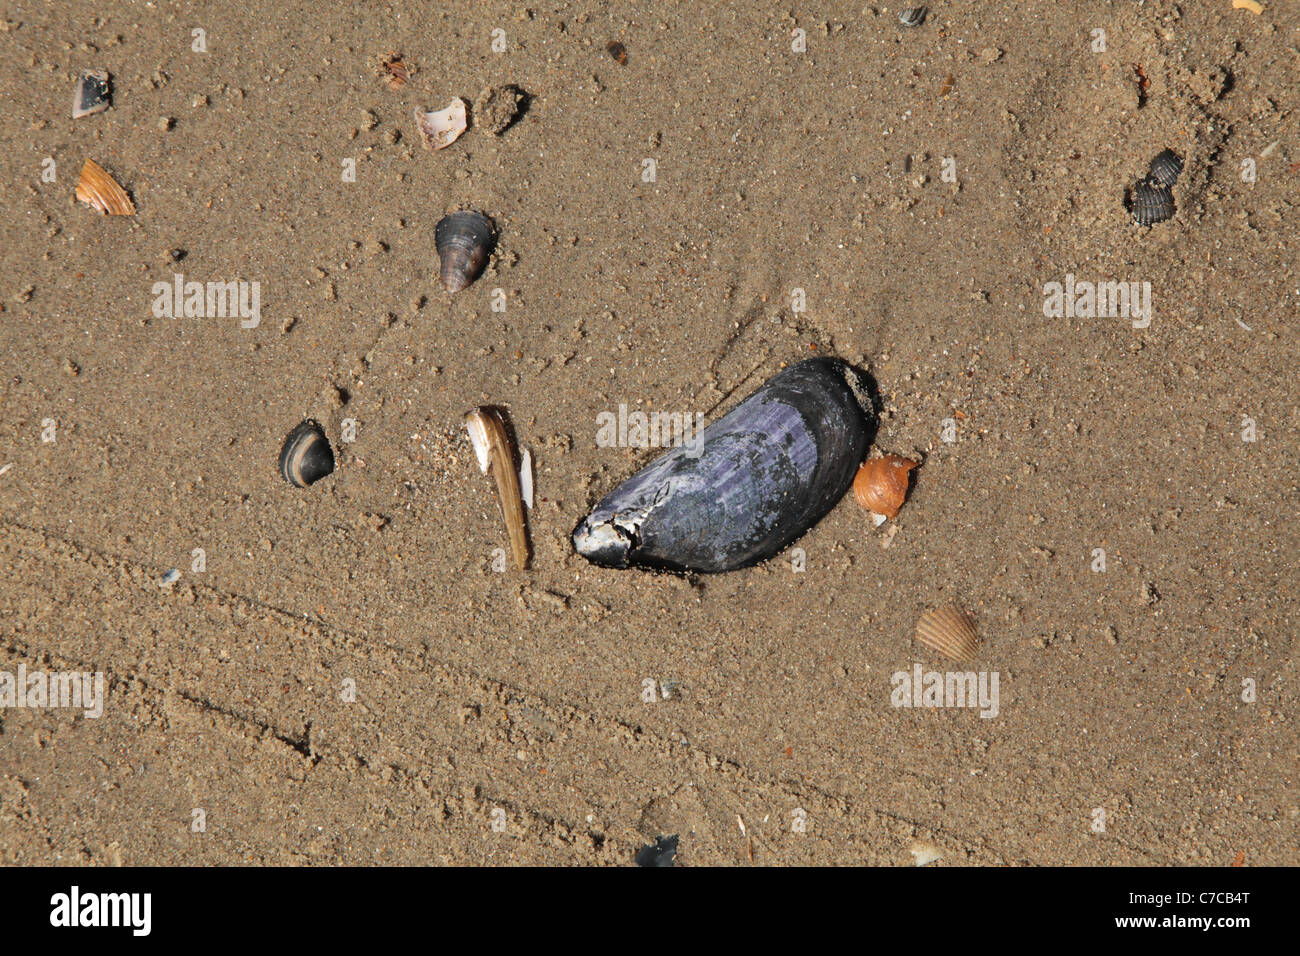 Miesmuschel am belgischen Strand, Blue mussel at the beach Stock Photo